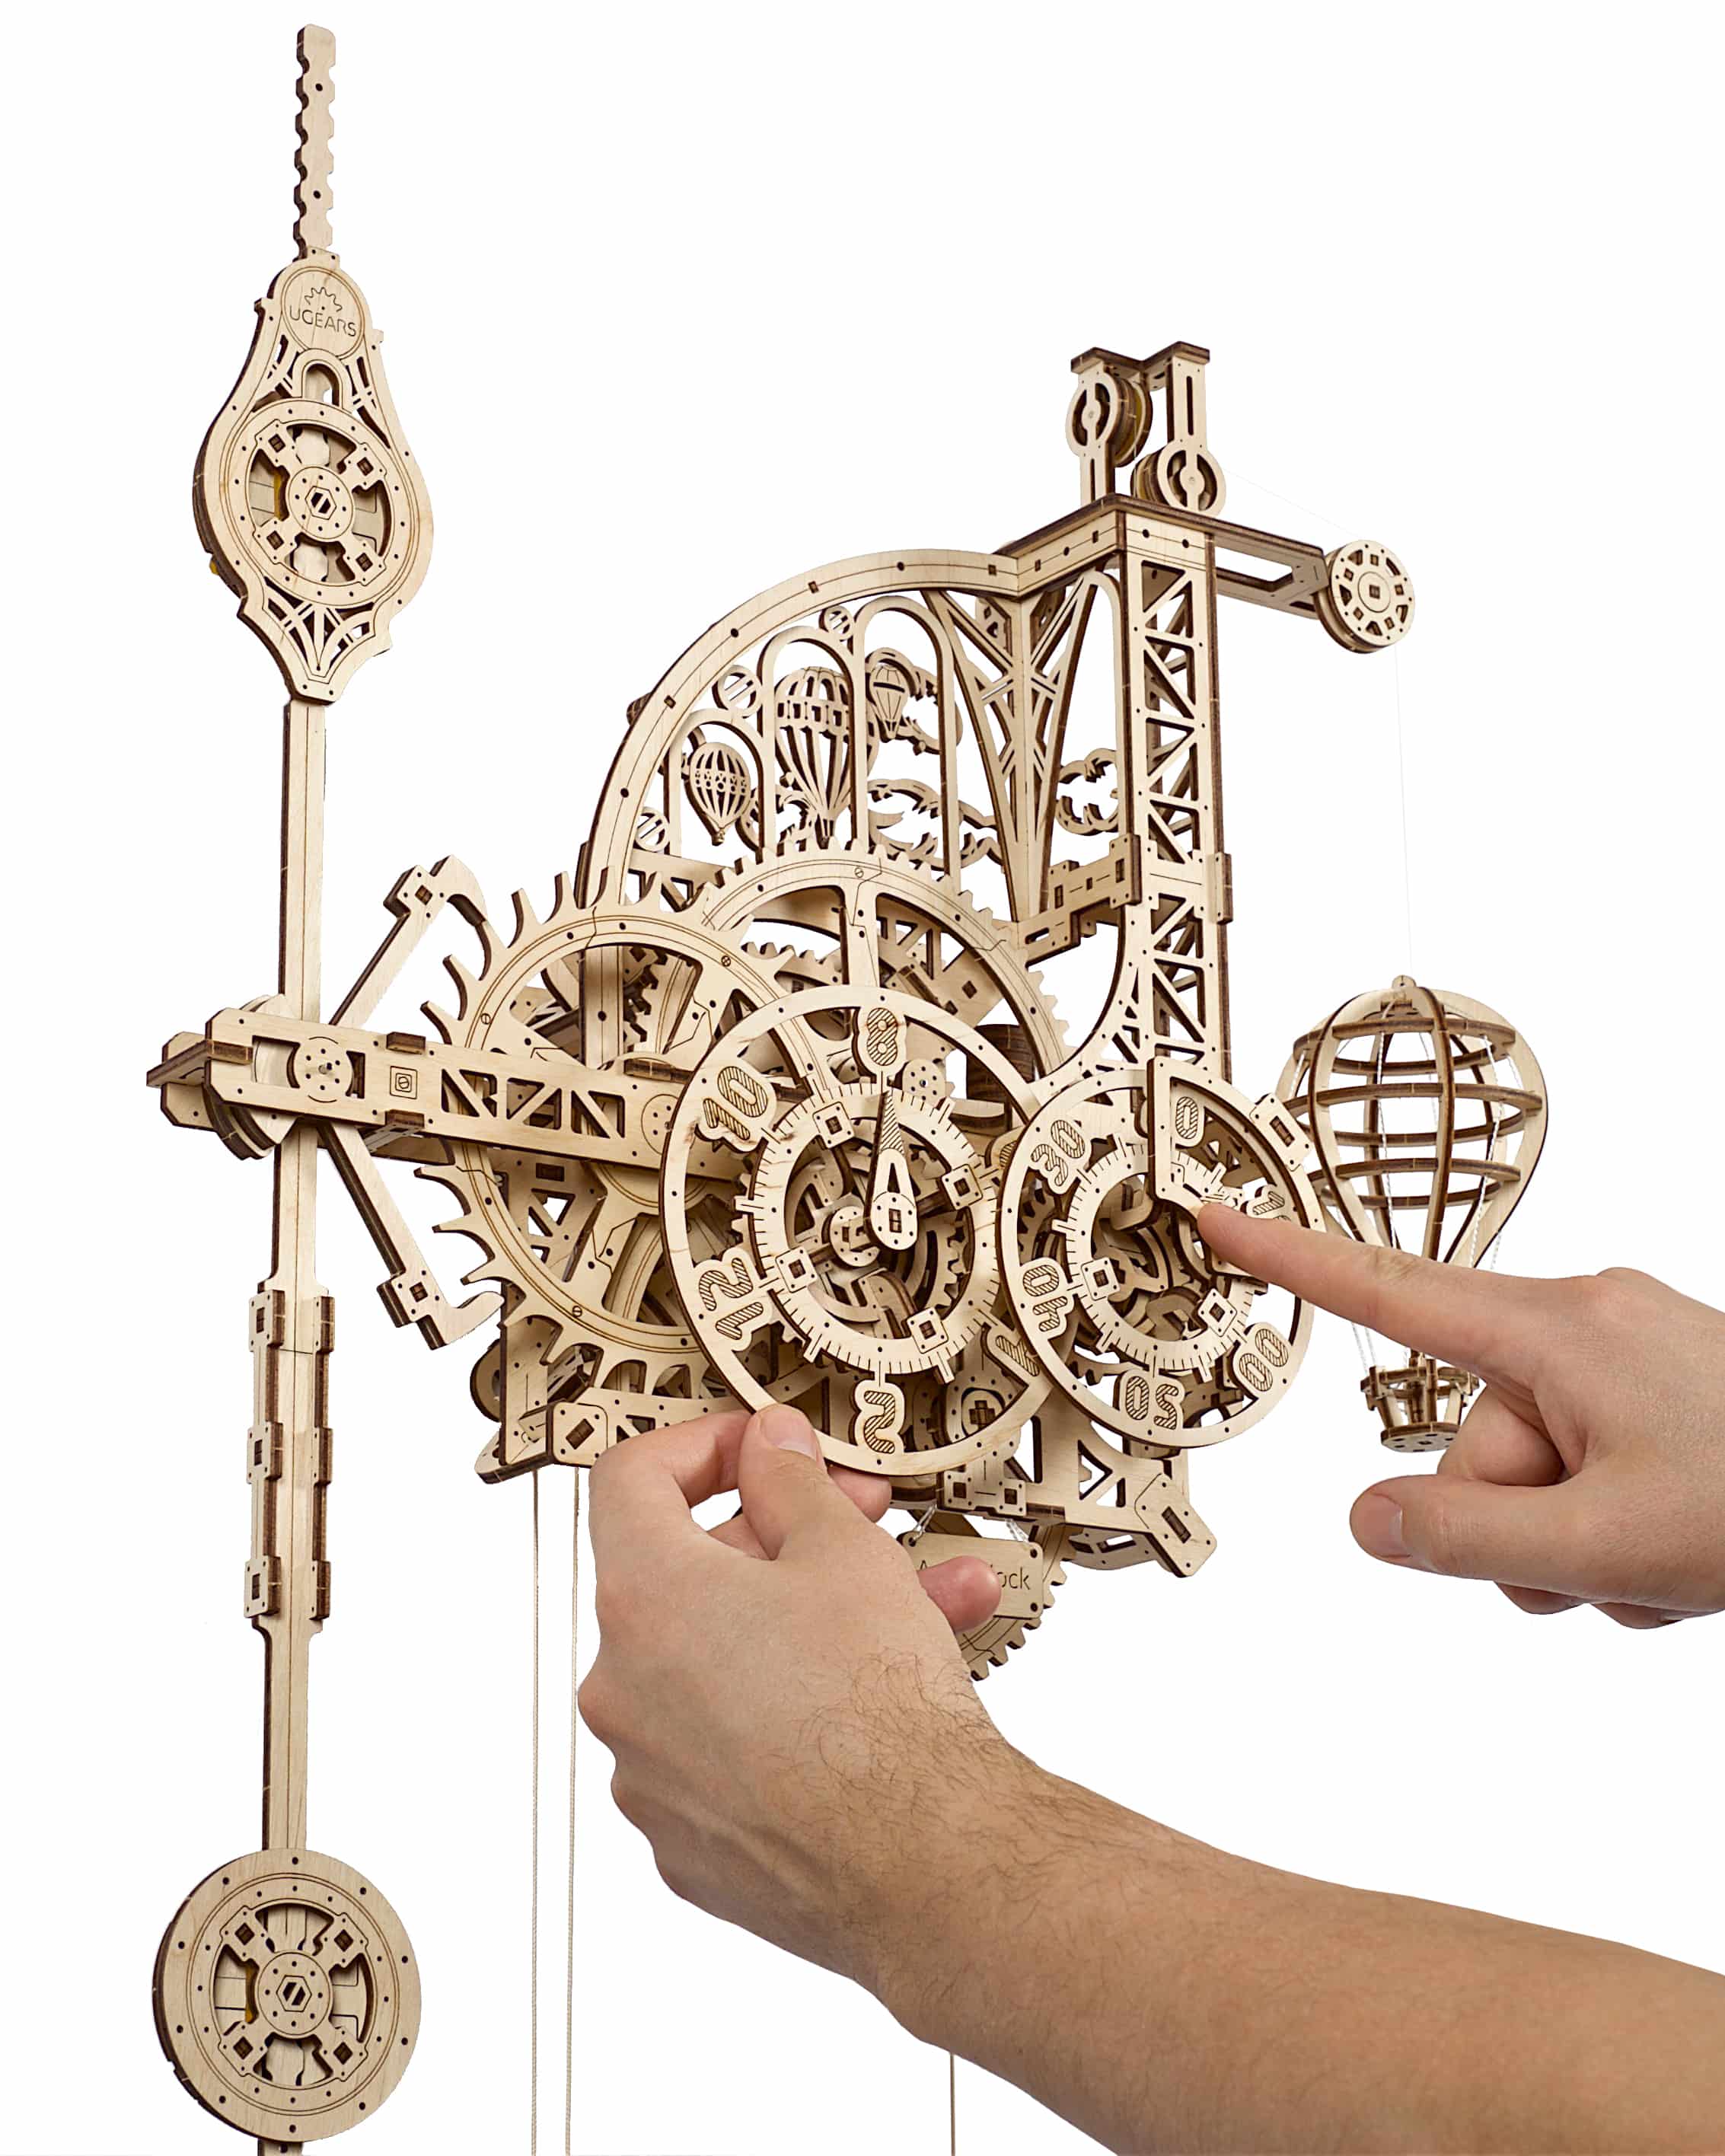 3D-Holzpuzzle "Wanduhr mit Pendel"